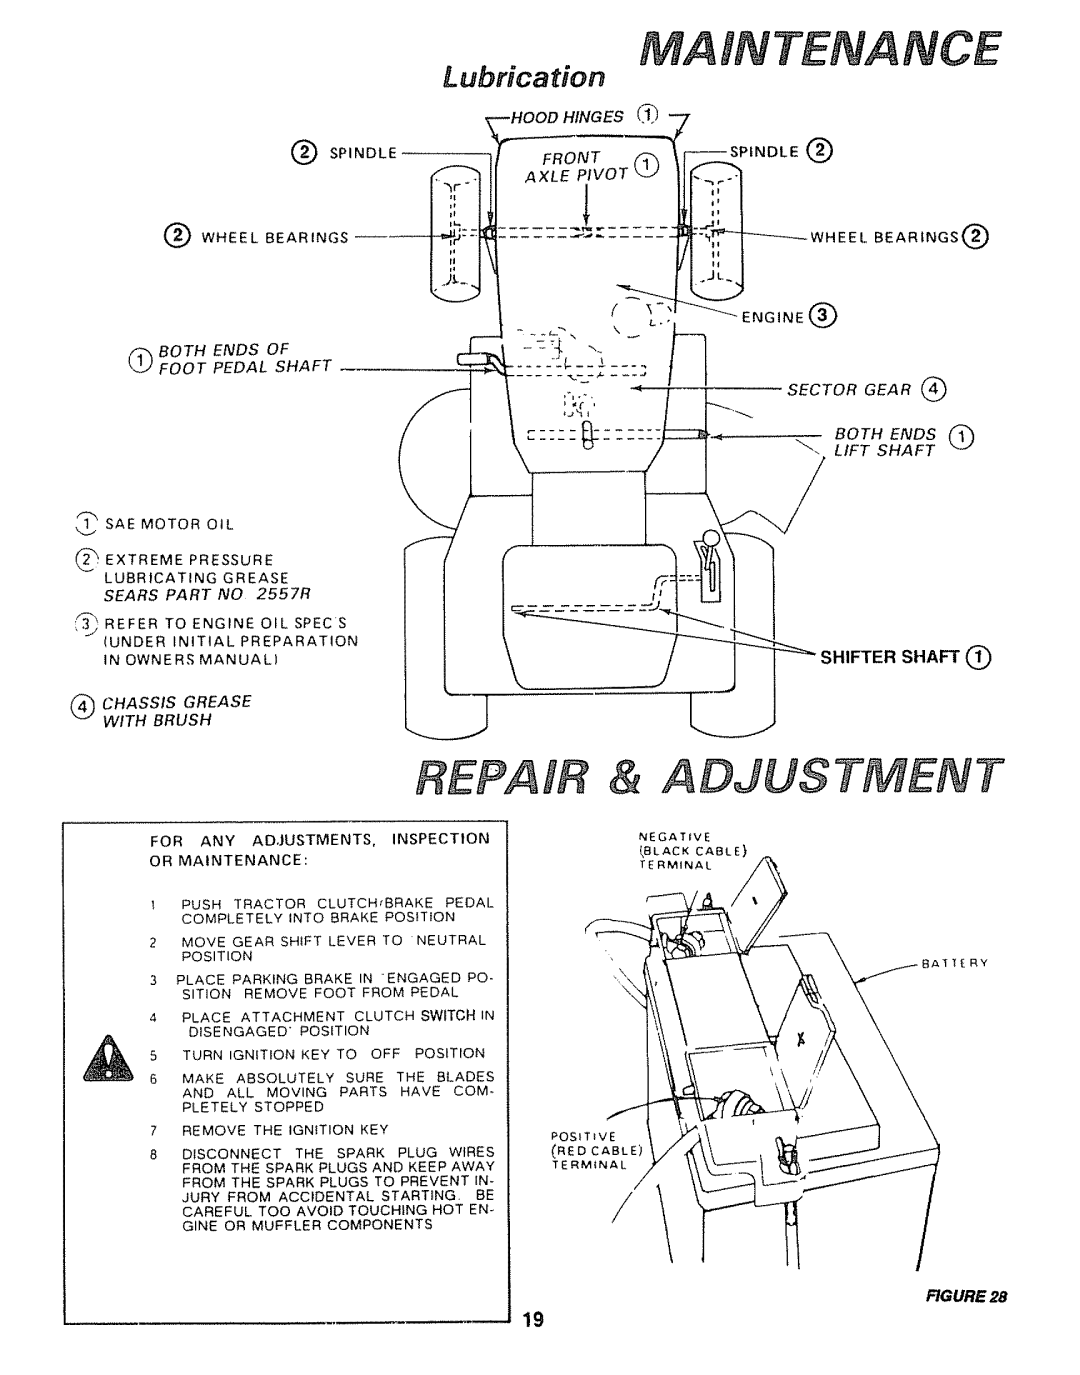 Sears 917.25446, 917.25004 owner manual MA Tenance, Repair & Adjustment 